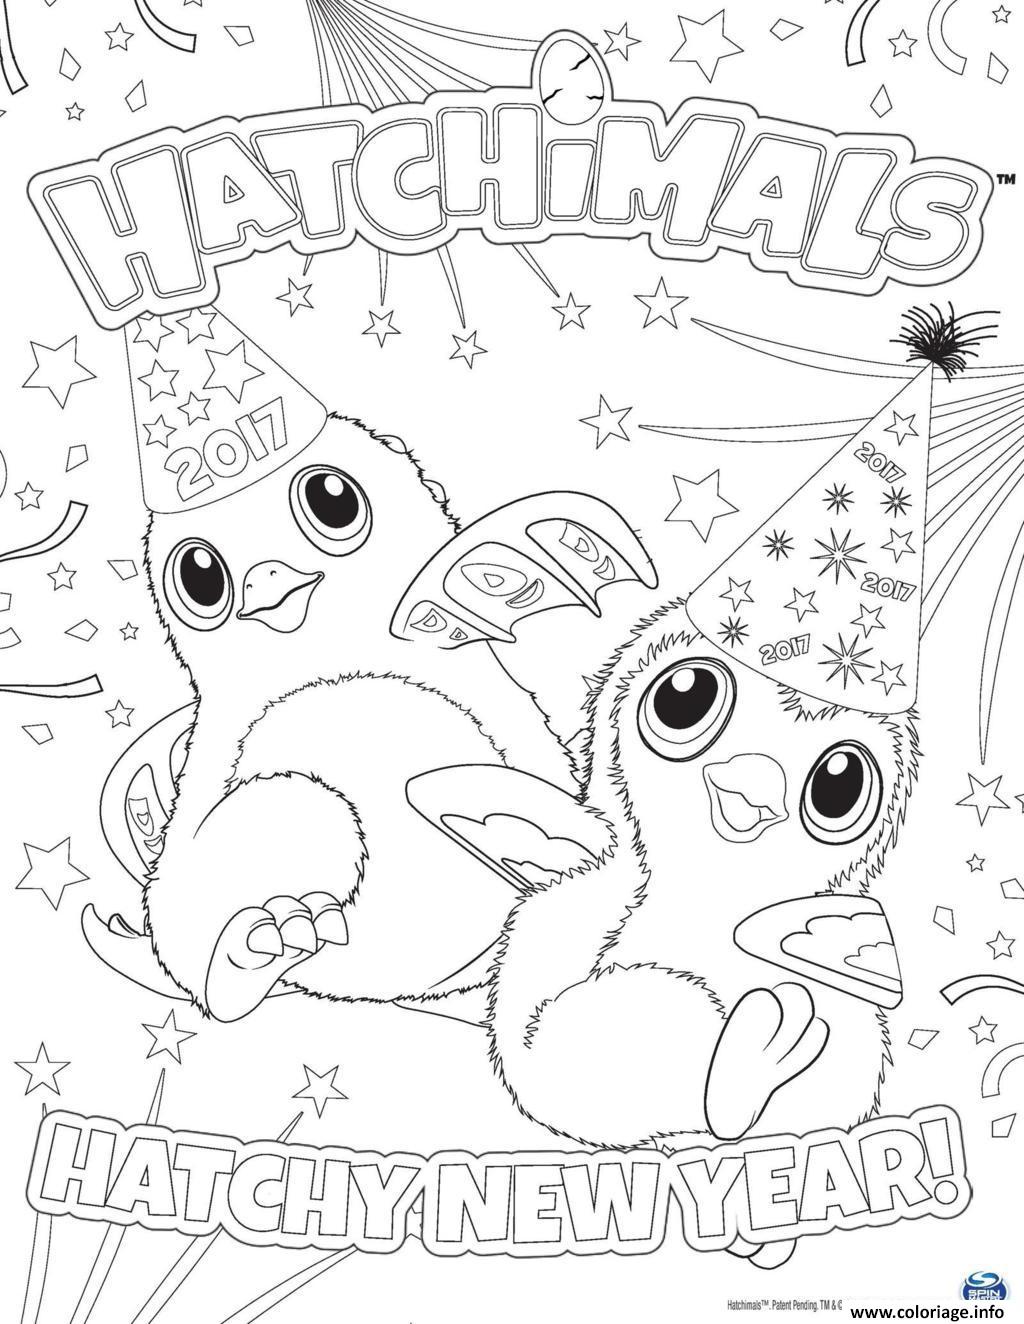 Dessin Hatchimals nouvel an 2017 hatchy  Coloriage Gratuit à Imprimer